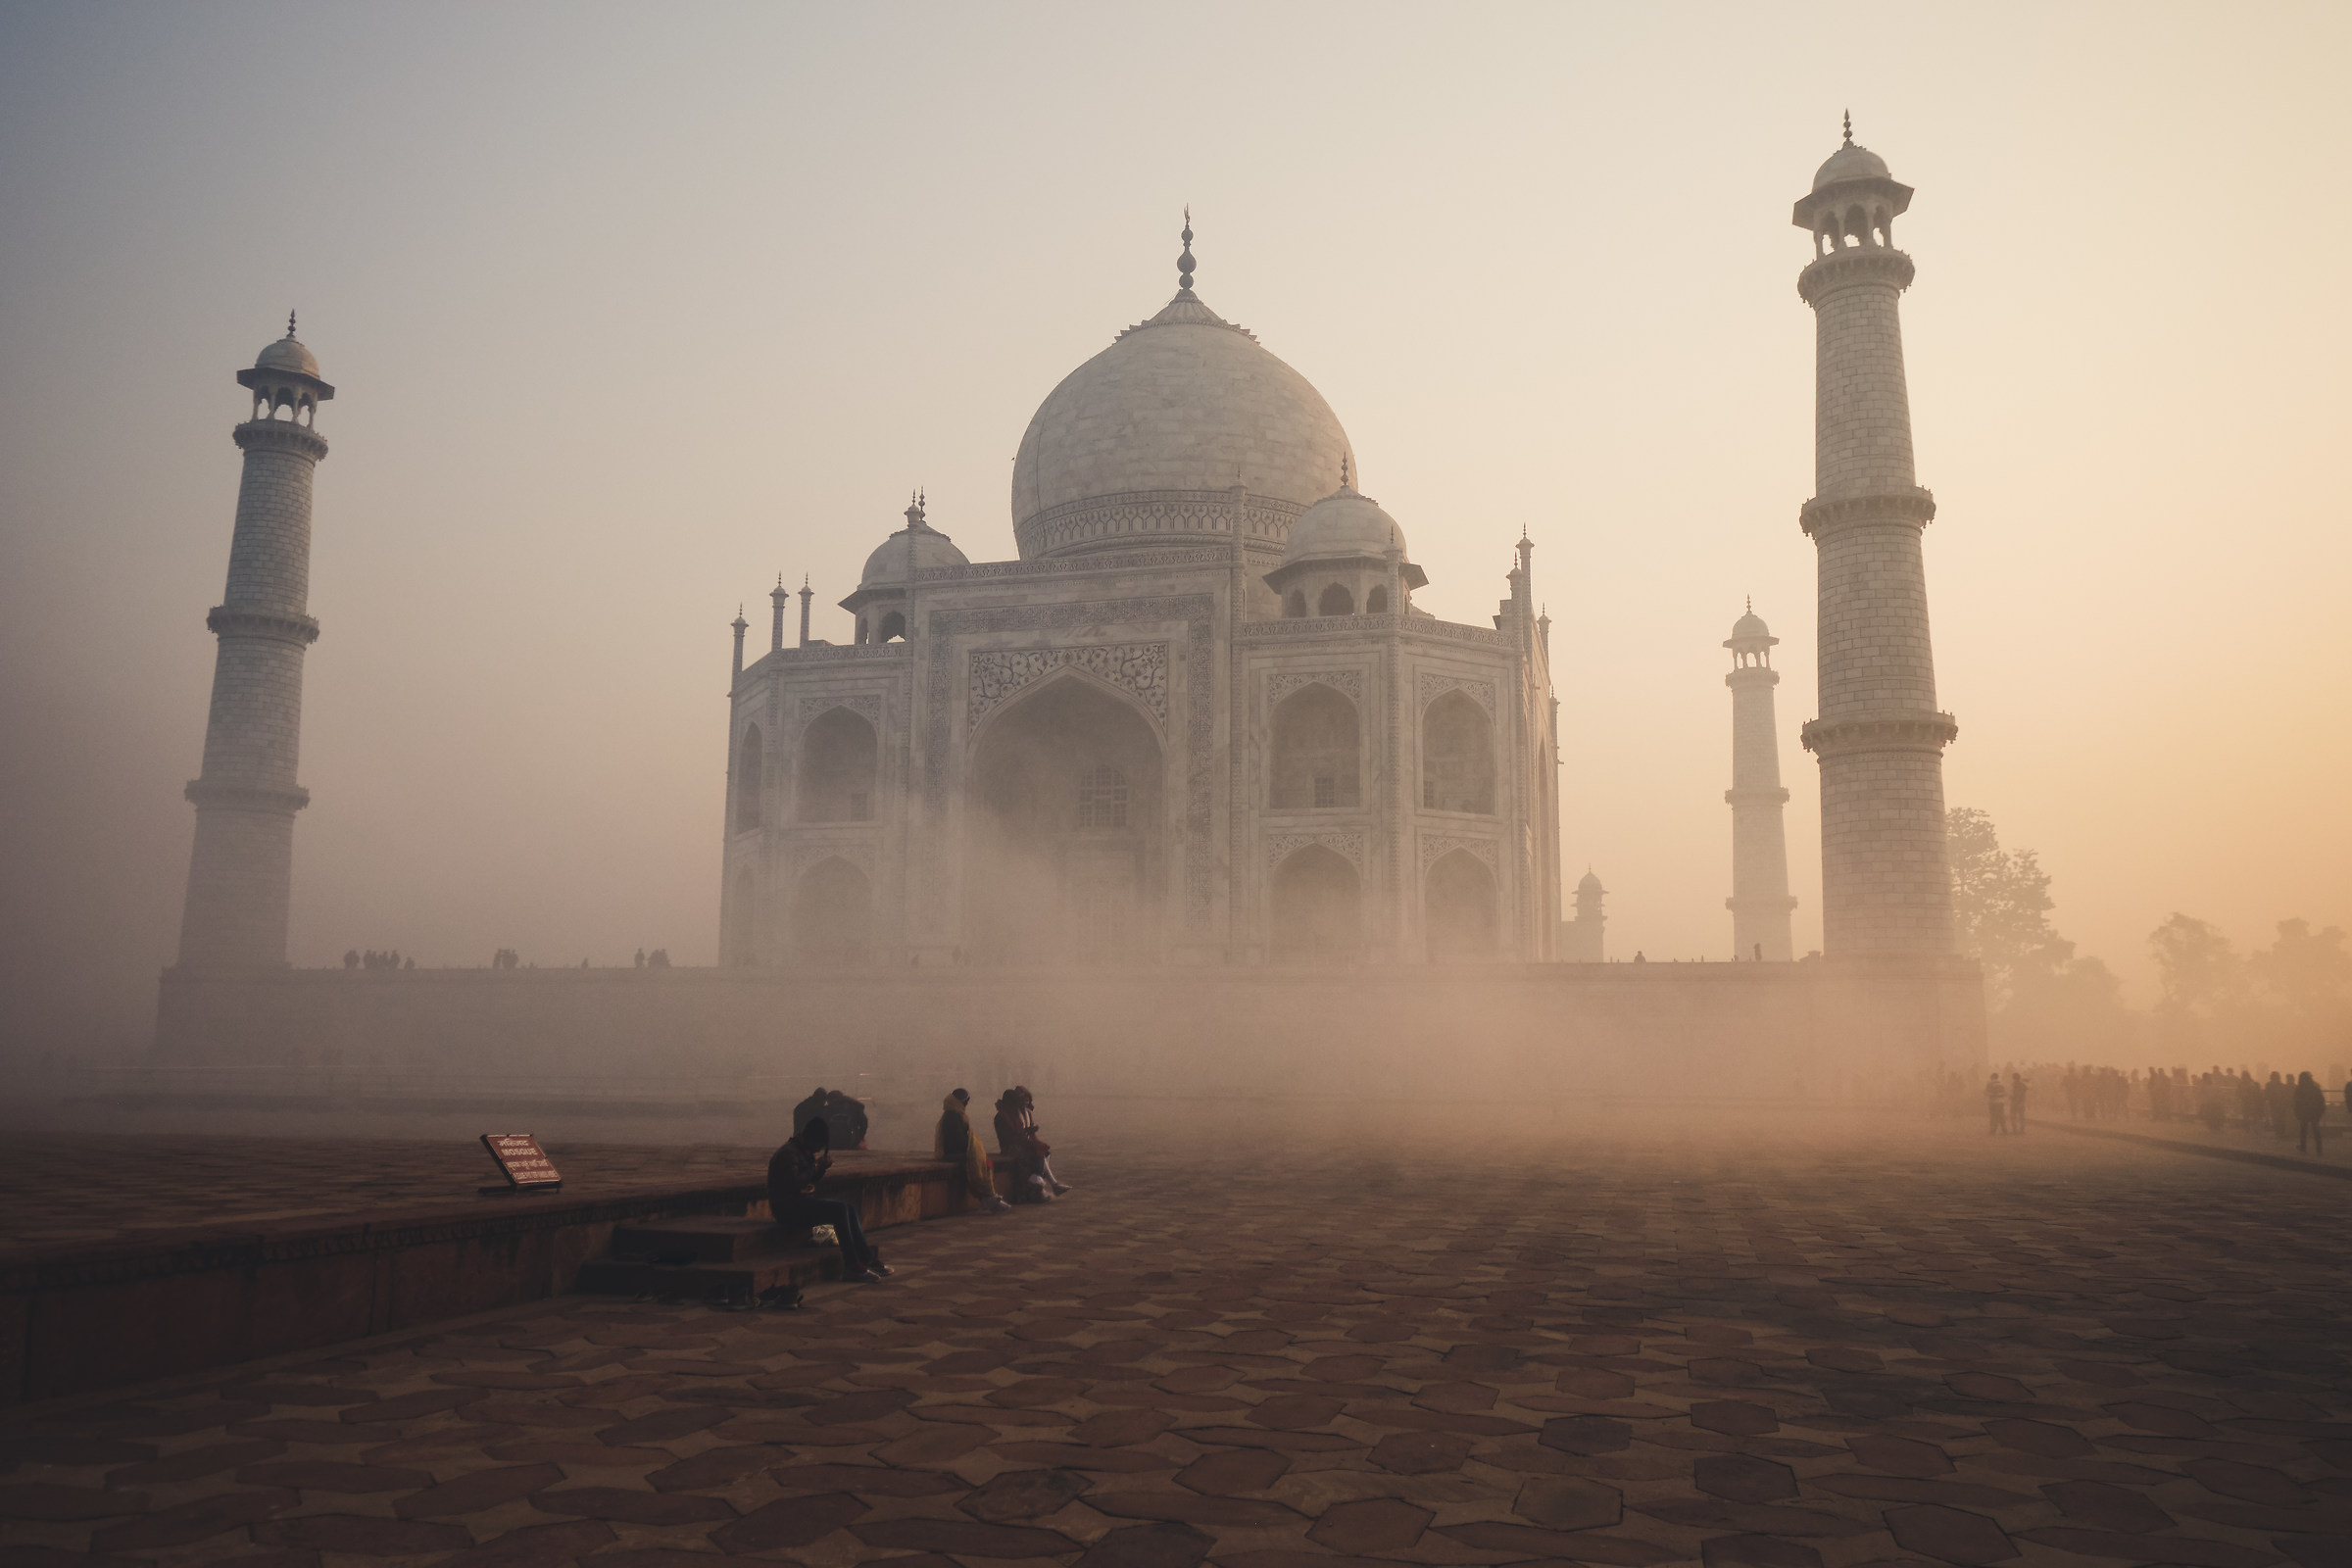 Fog on the Taj Mahal...